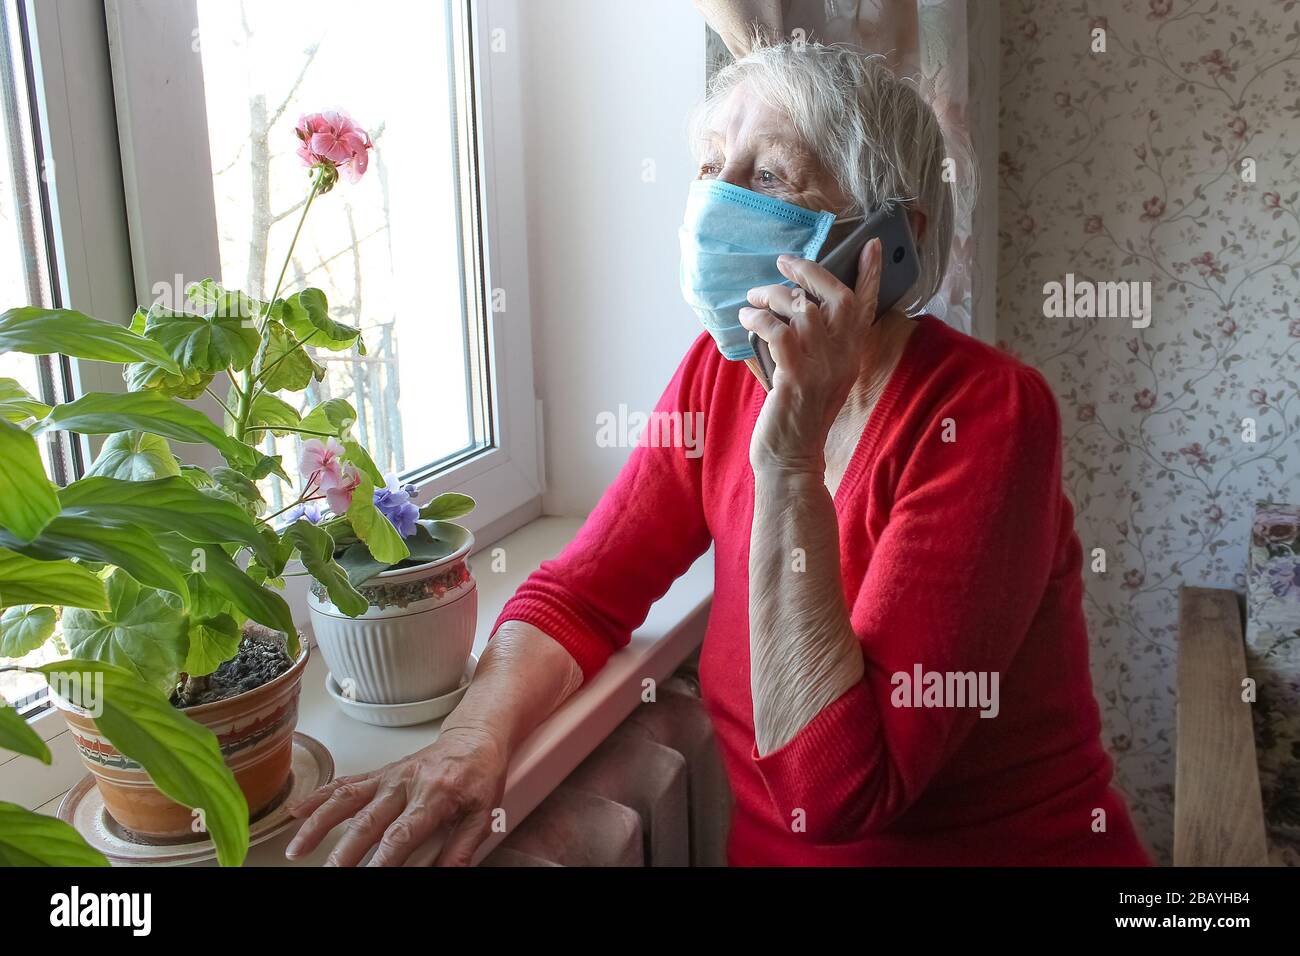 Il Covid-19, salute, sicurezza e pandemia concetto - vecchia donna solitaria anziano seduta vicino alla finestra Foto Stock